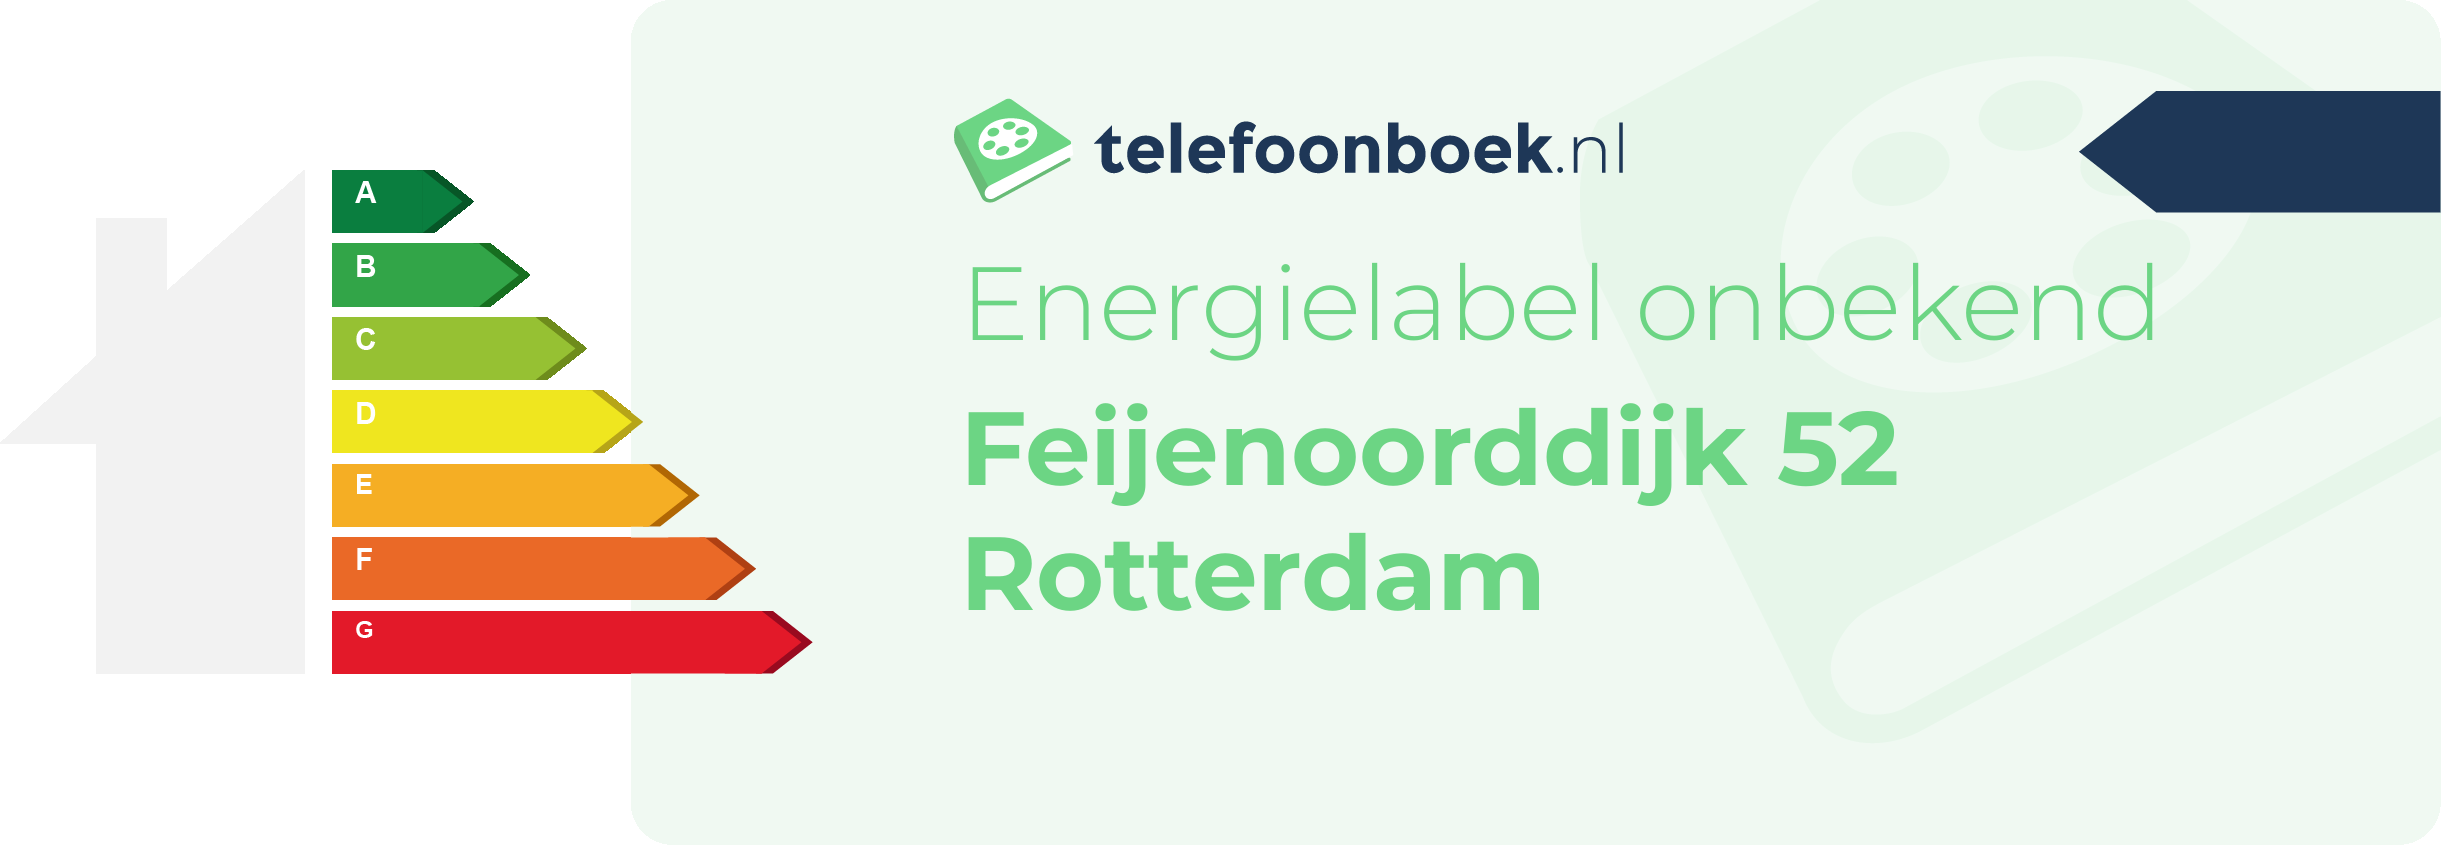 Energielabel Feijenoorddijk 52 Rotterdam